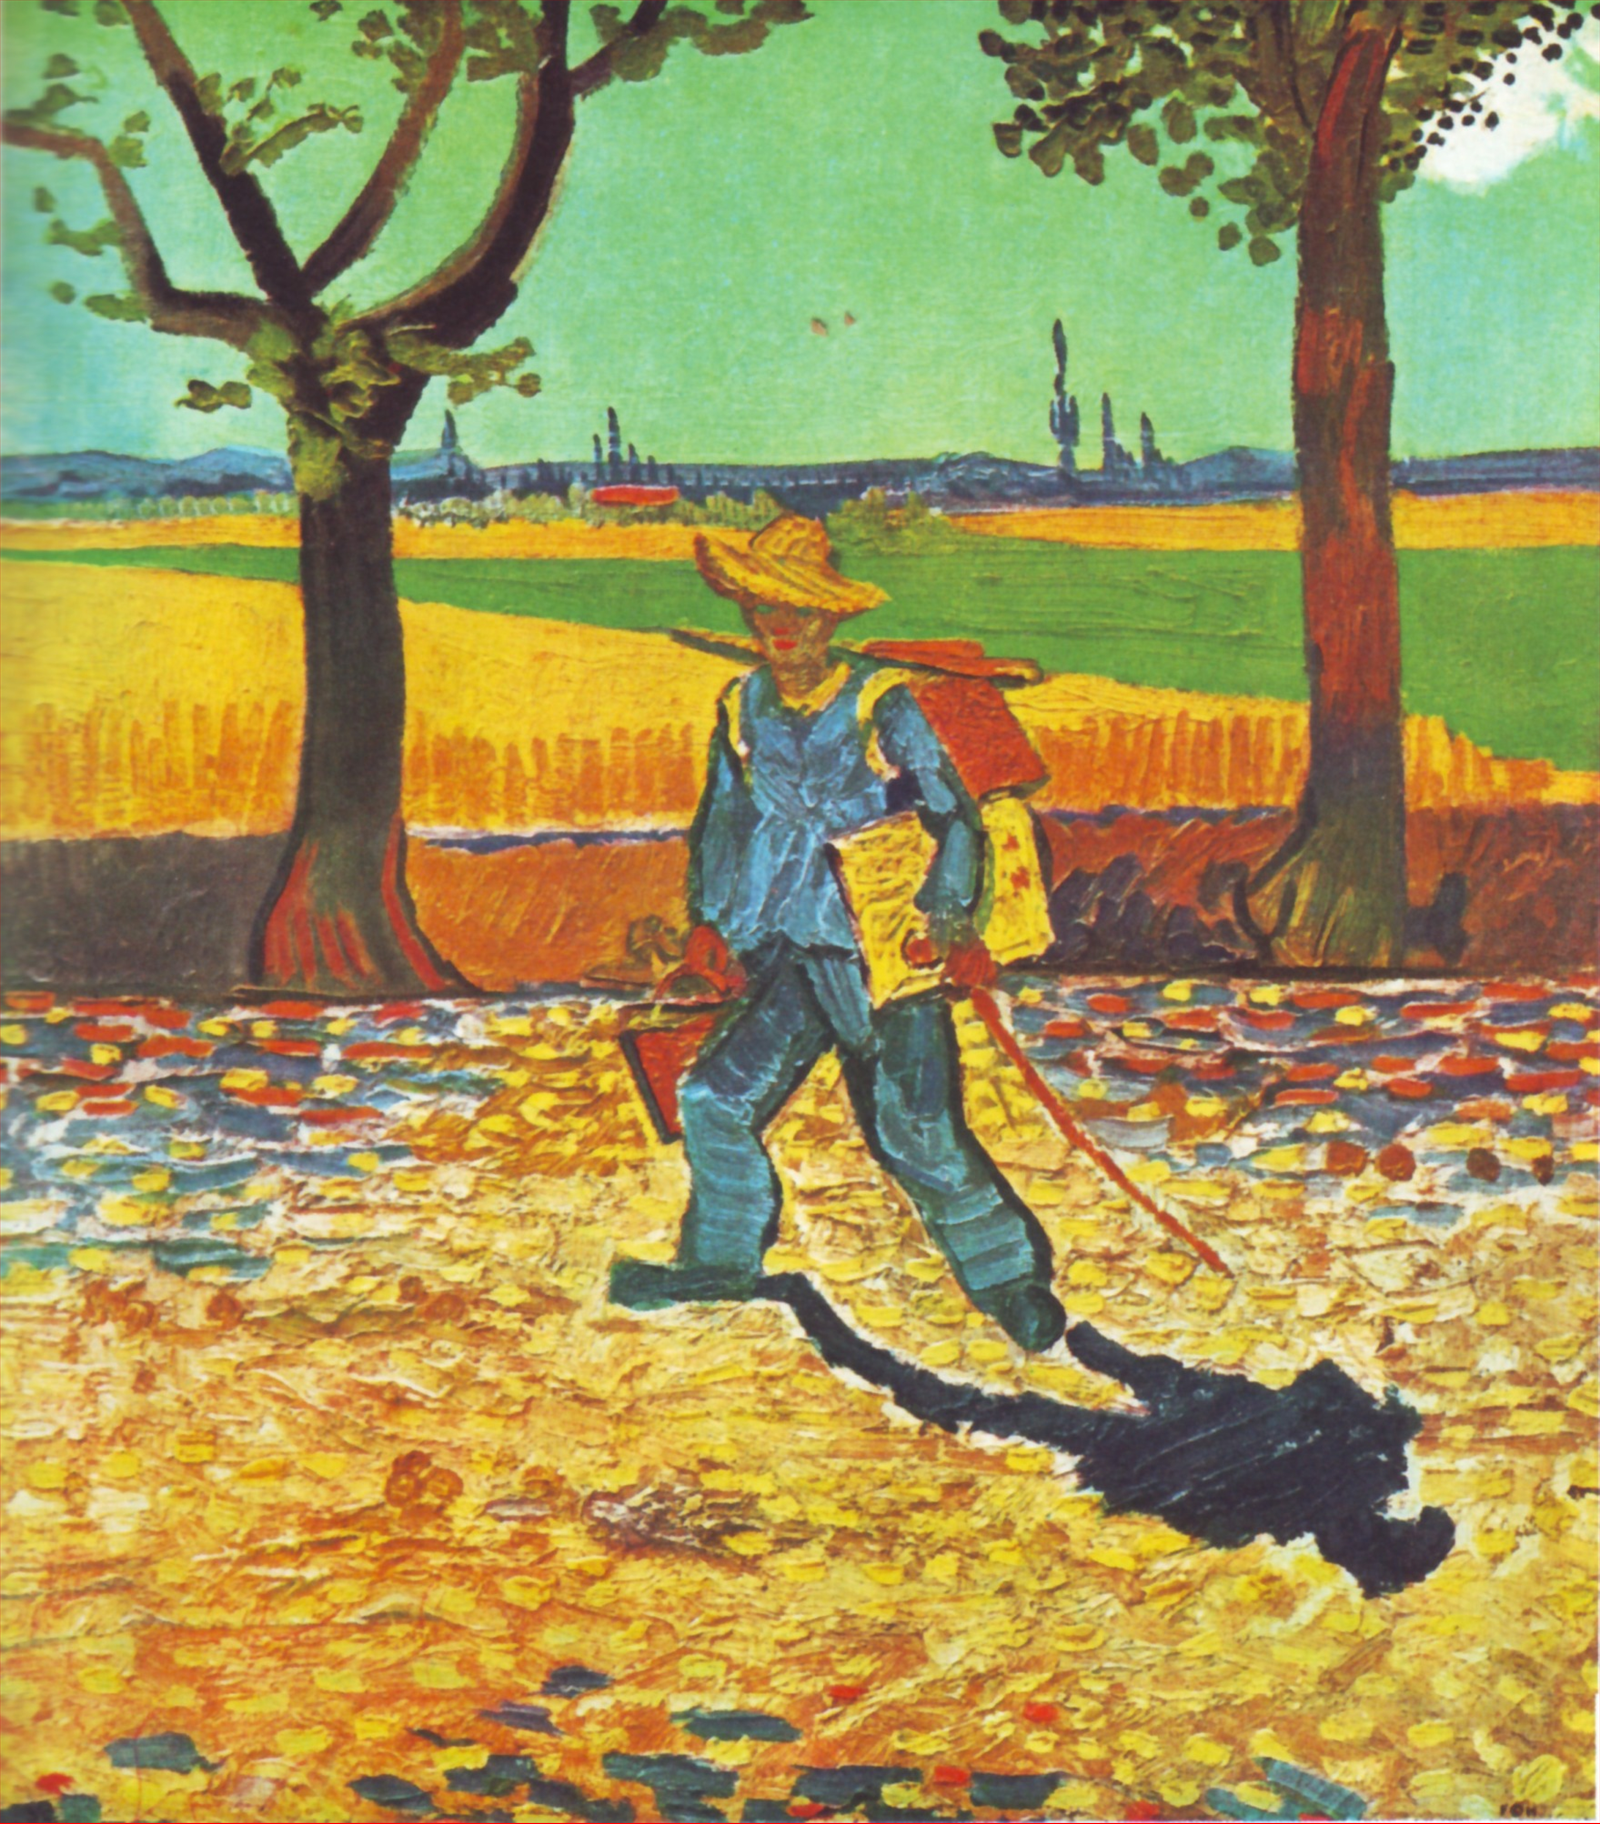 Kunstschilder op weg naar zijn werk by Vincent Van Gogh - 1888 - 48 x 44 cm 